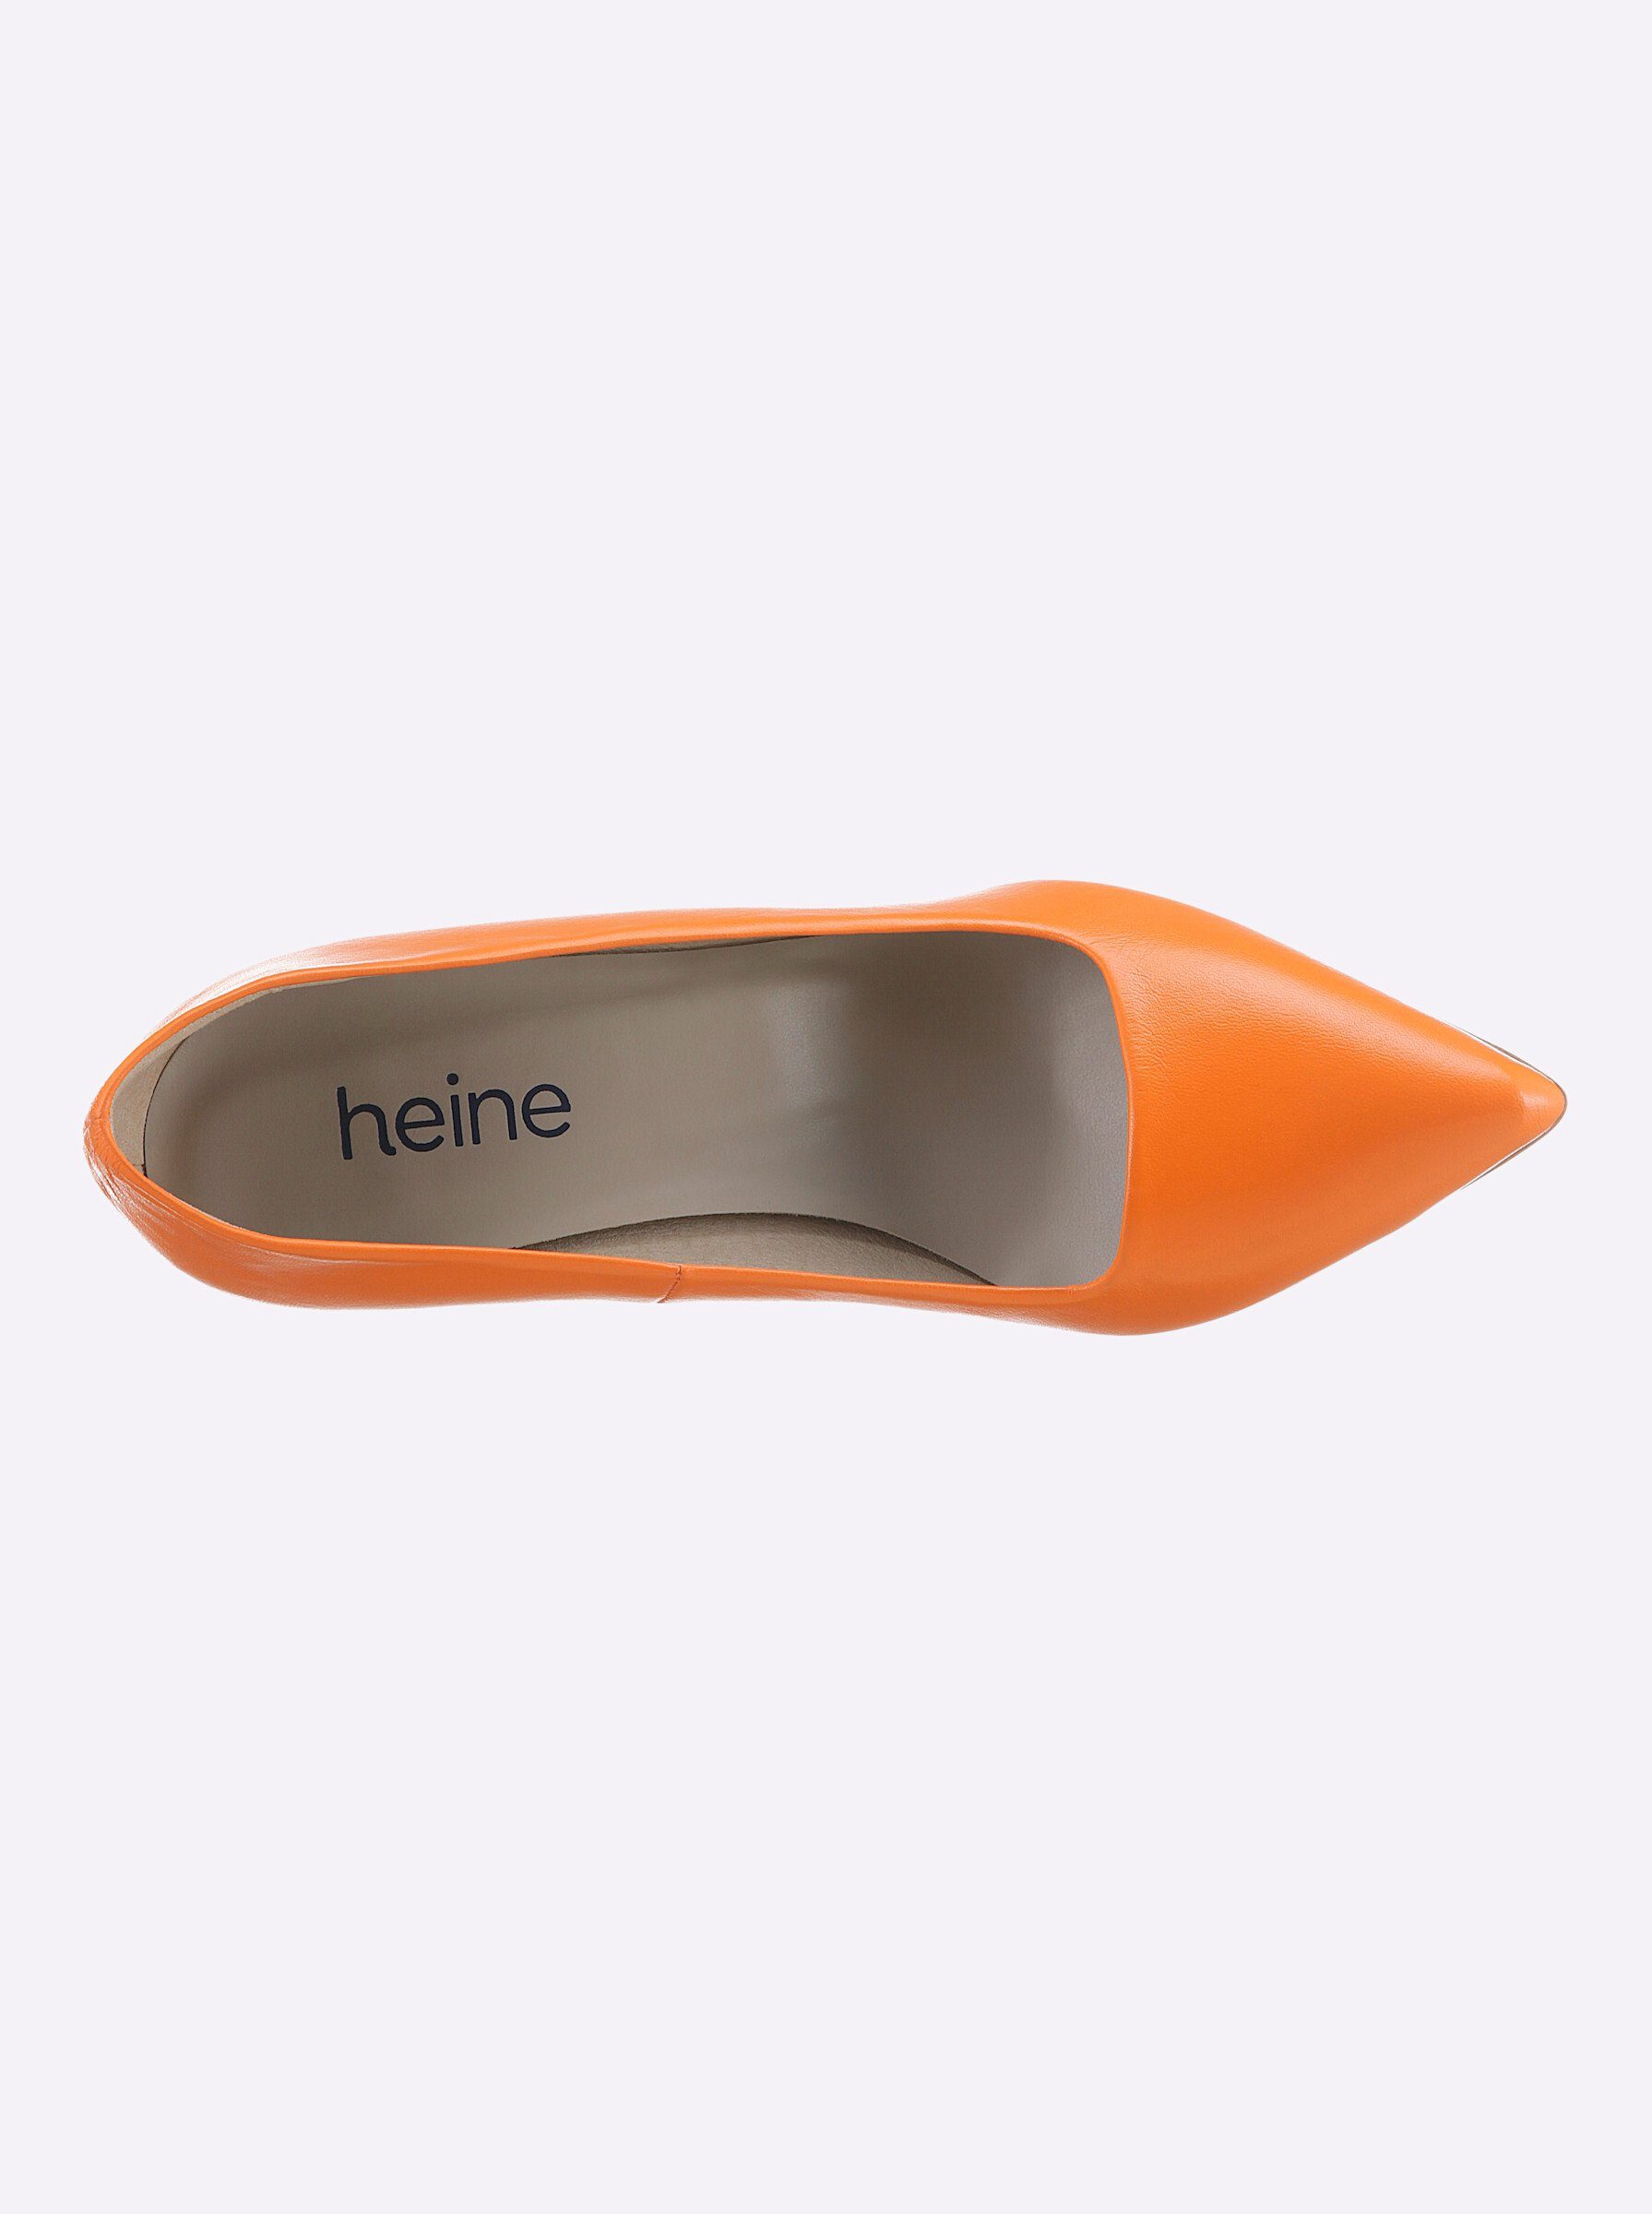 heine Pumps orange